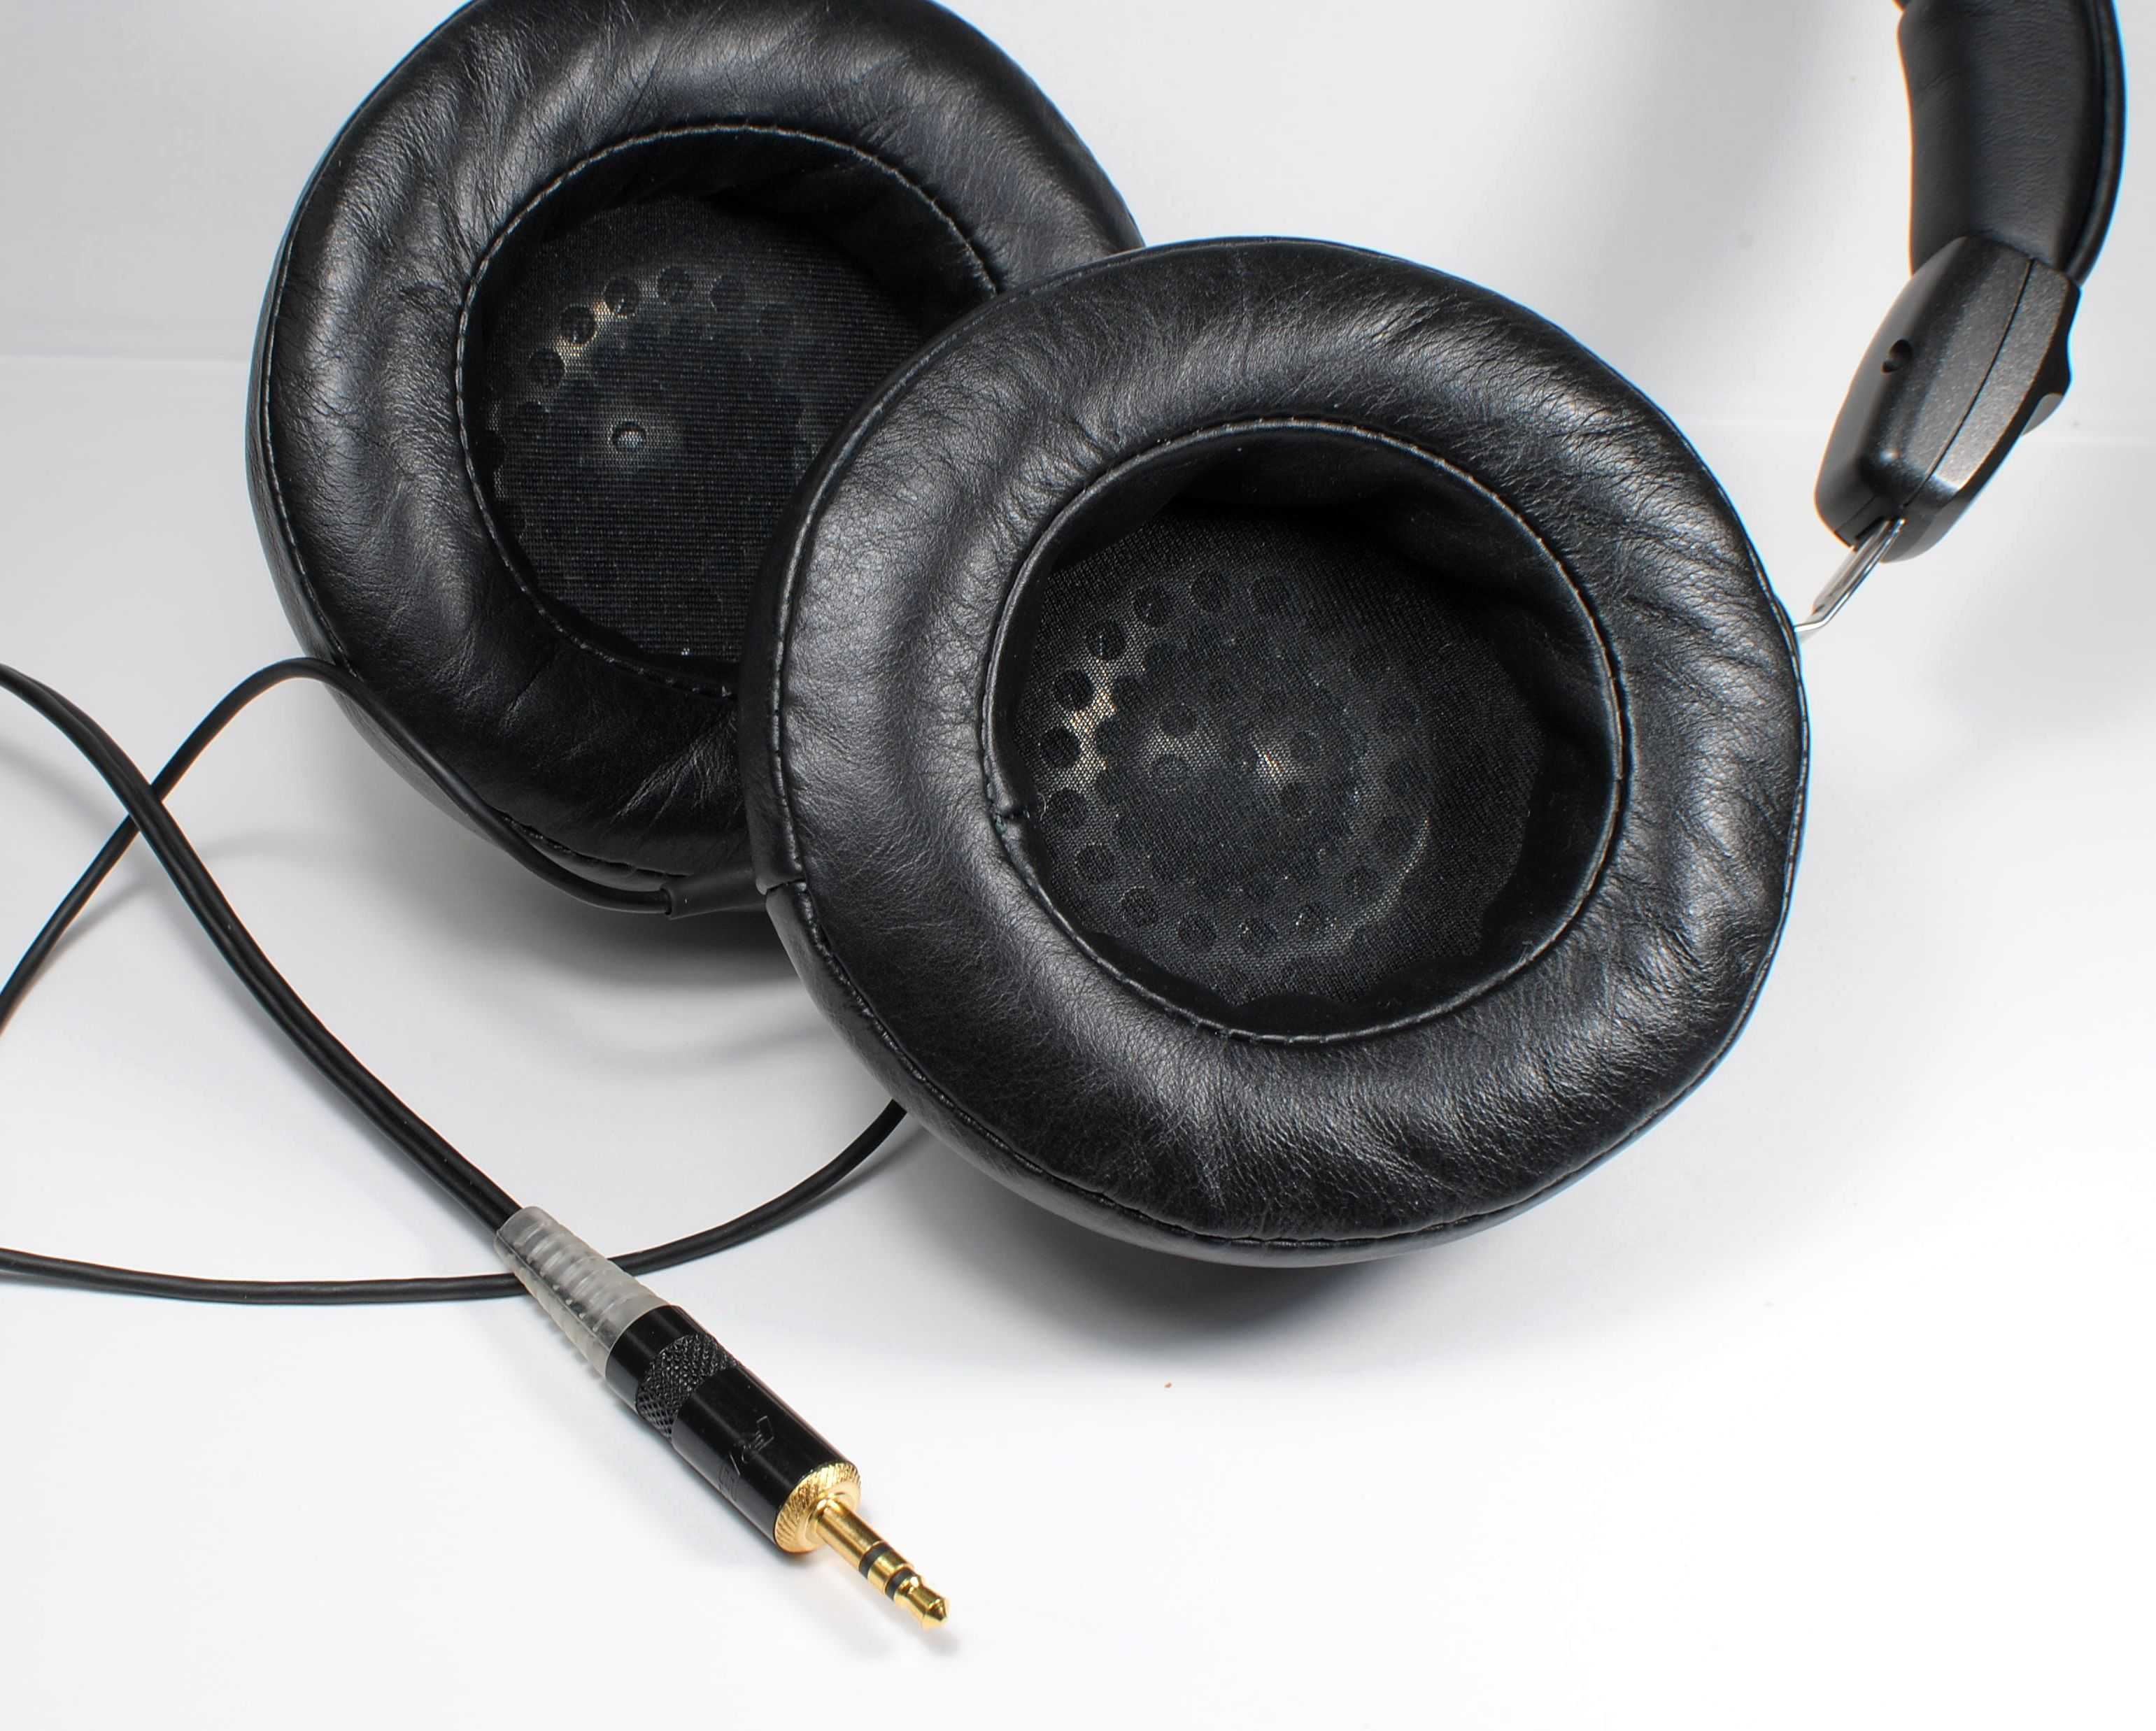 Audio-technica ath-ew9 купить по акционной цене , отзывы и обзоры.